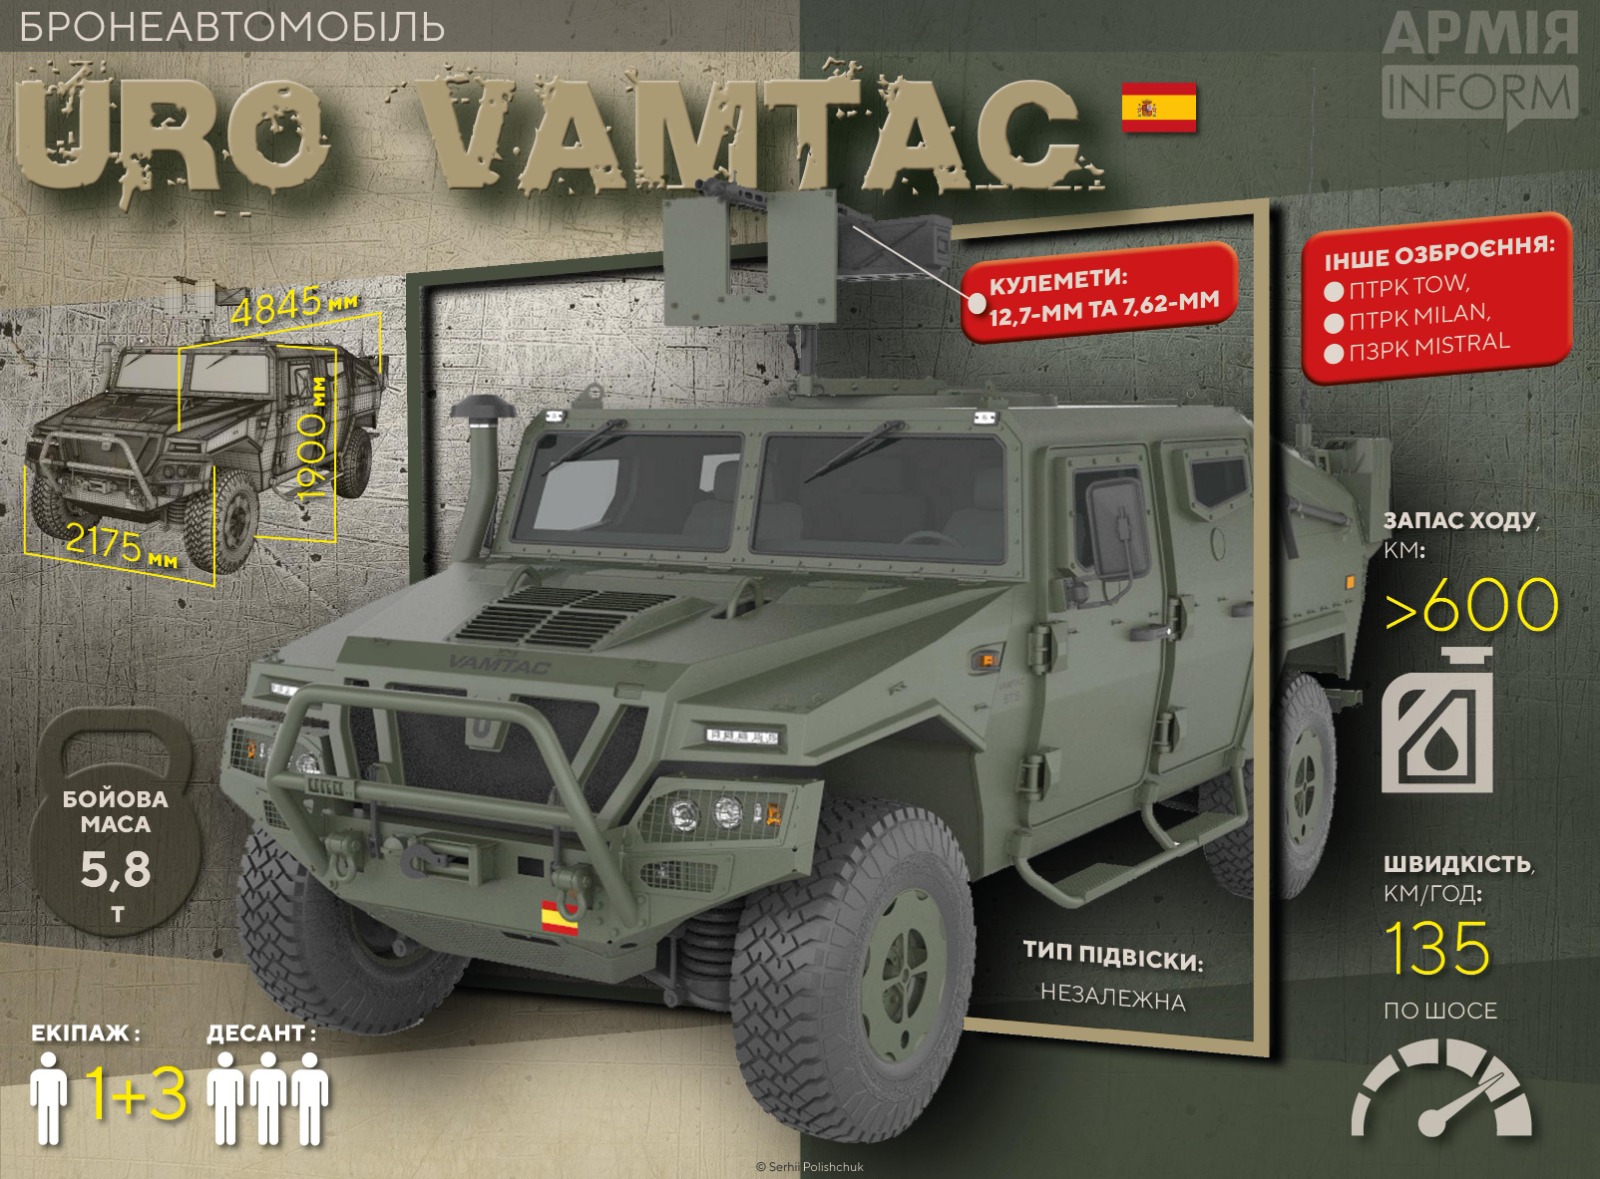 Украина может получить новую партию бронеавтомобилей Uro Vamtac